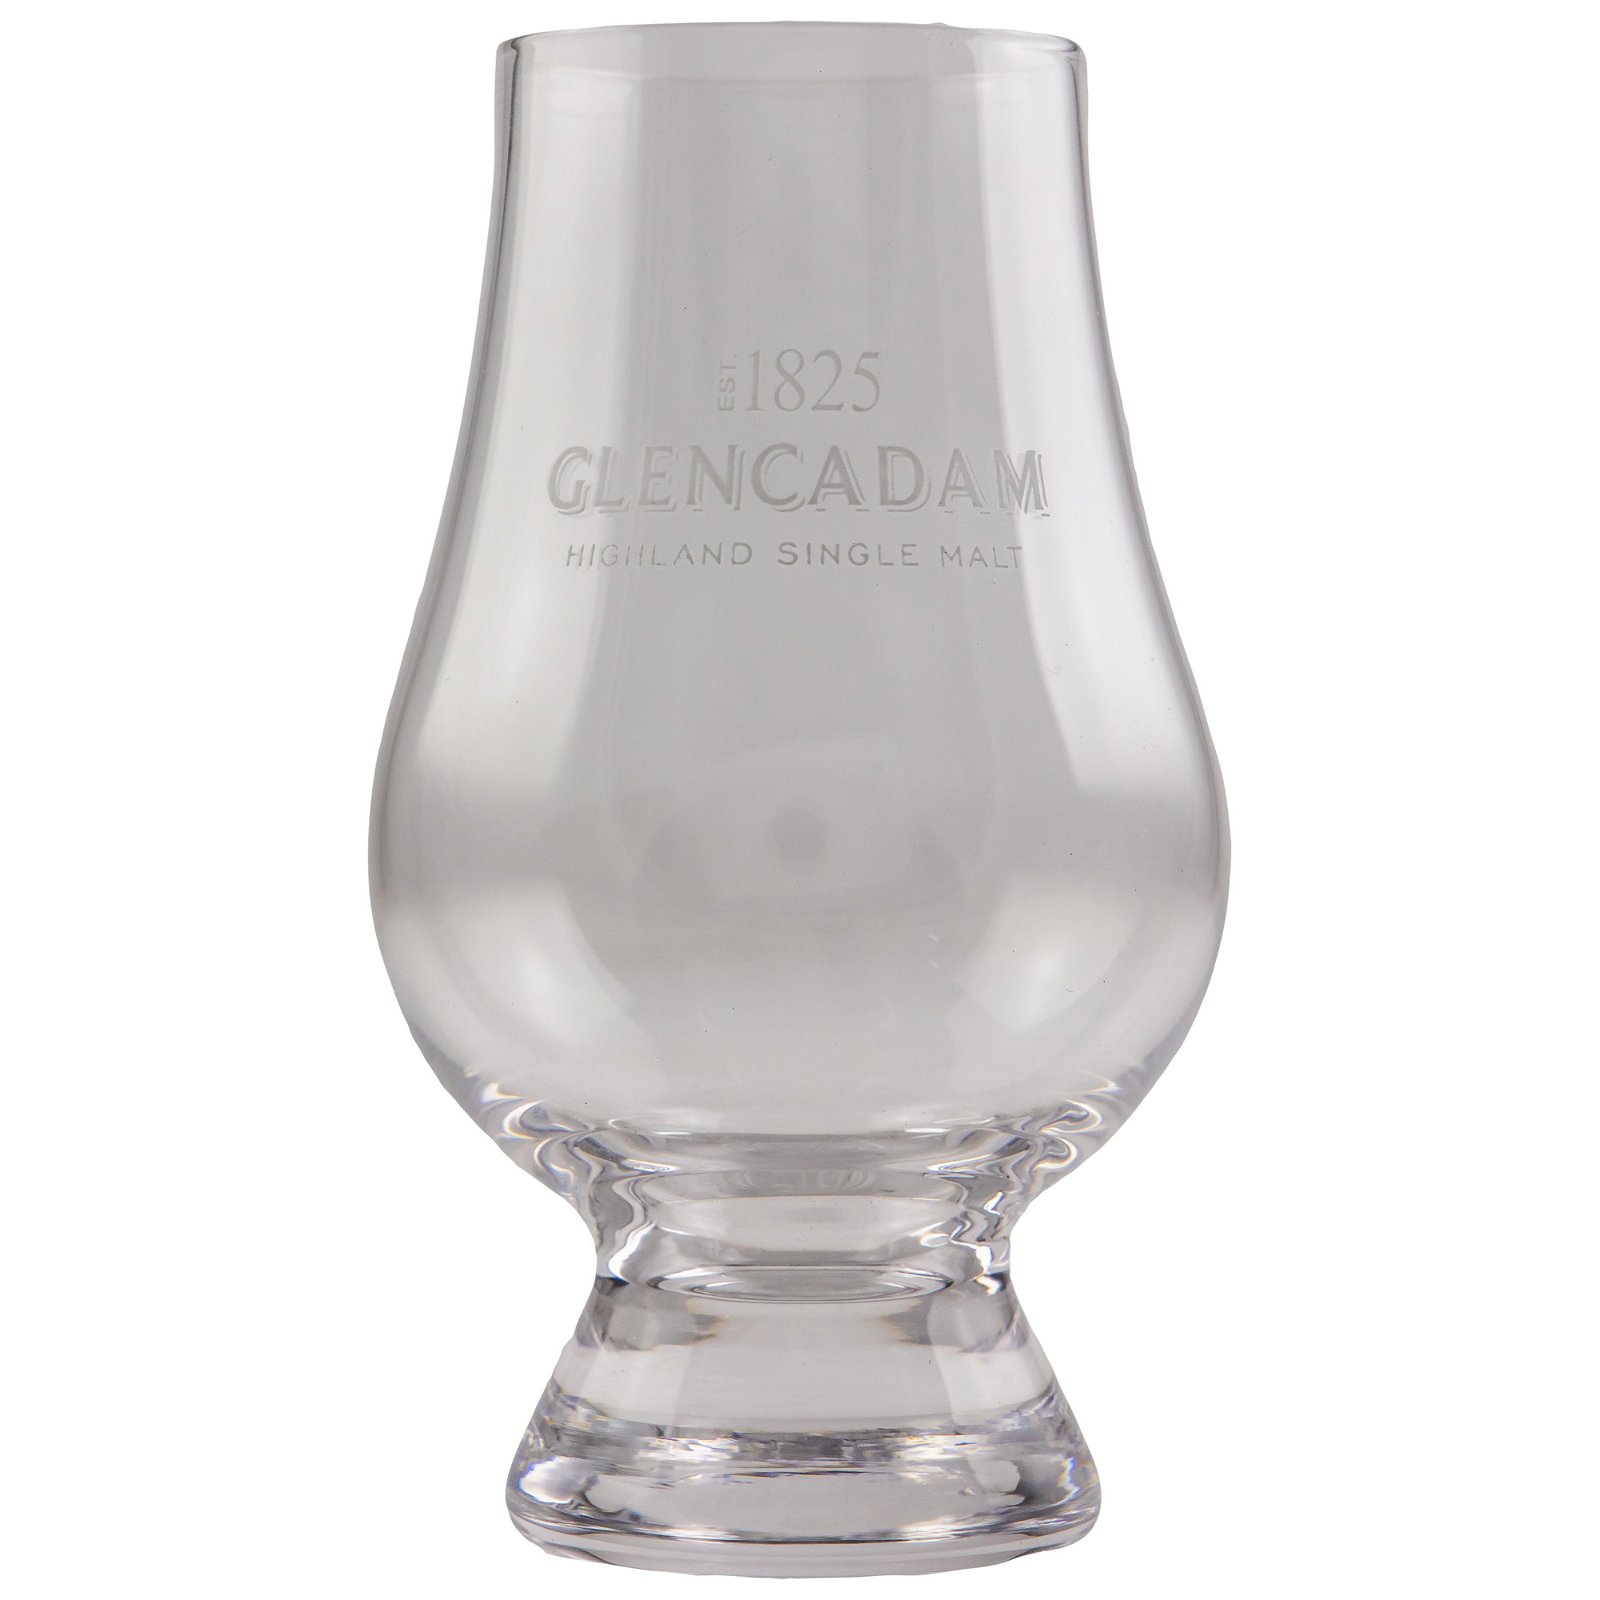 Glencadam Glencairn Glas